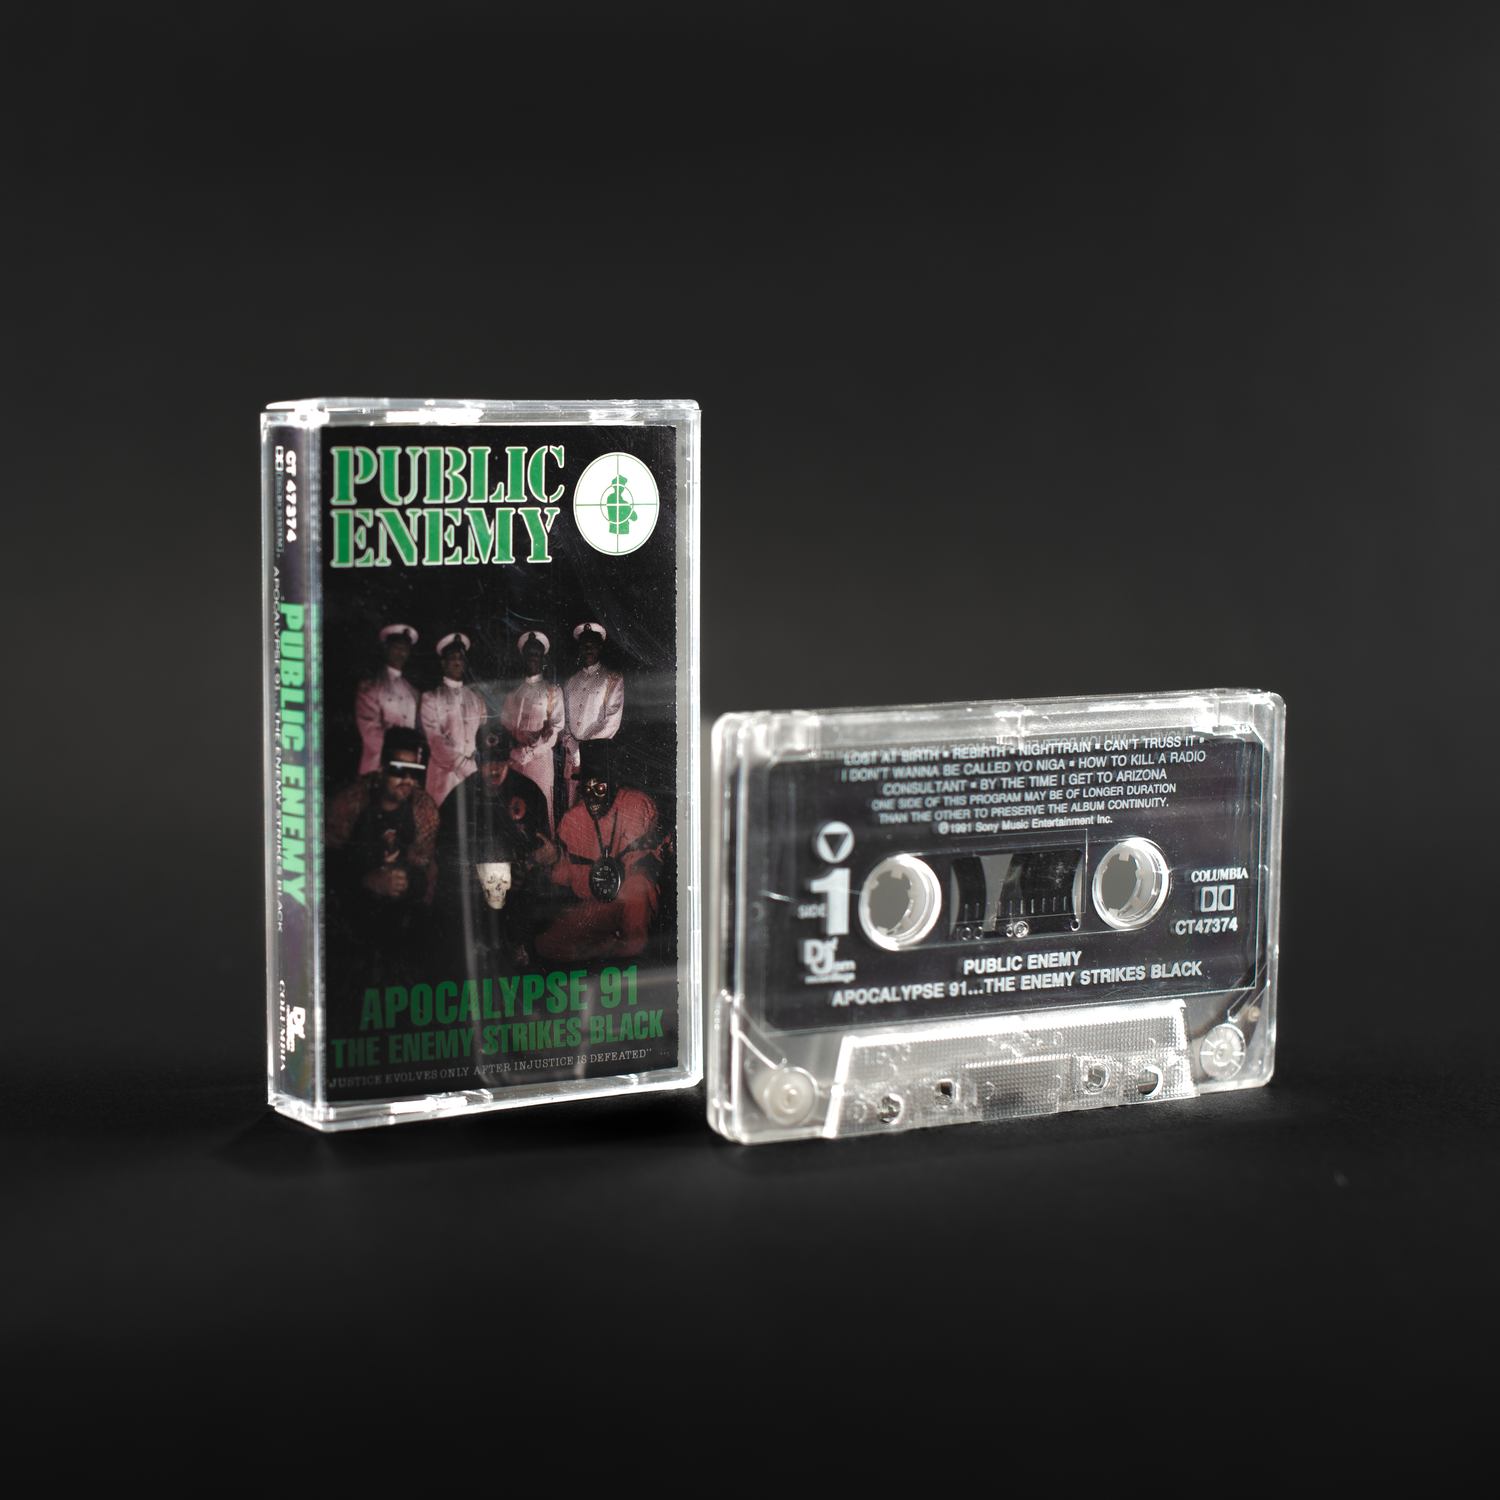 Public Enemy - Apocalypse 91... L'ennemi contre-attaque (cassette vintage)